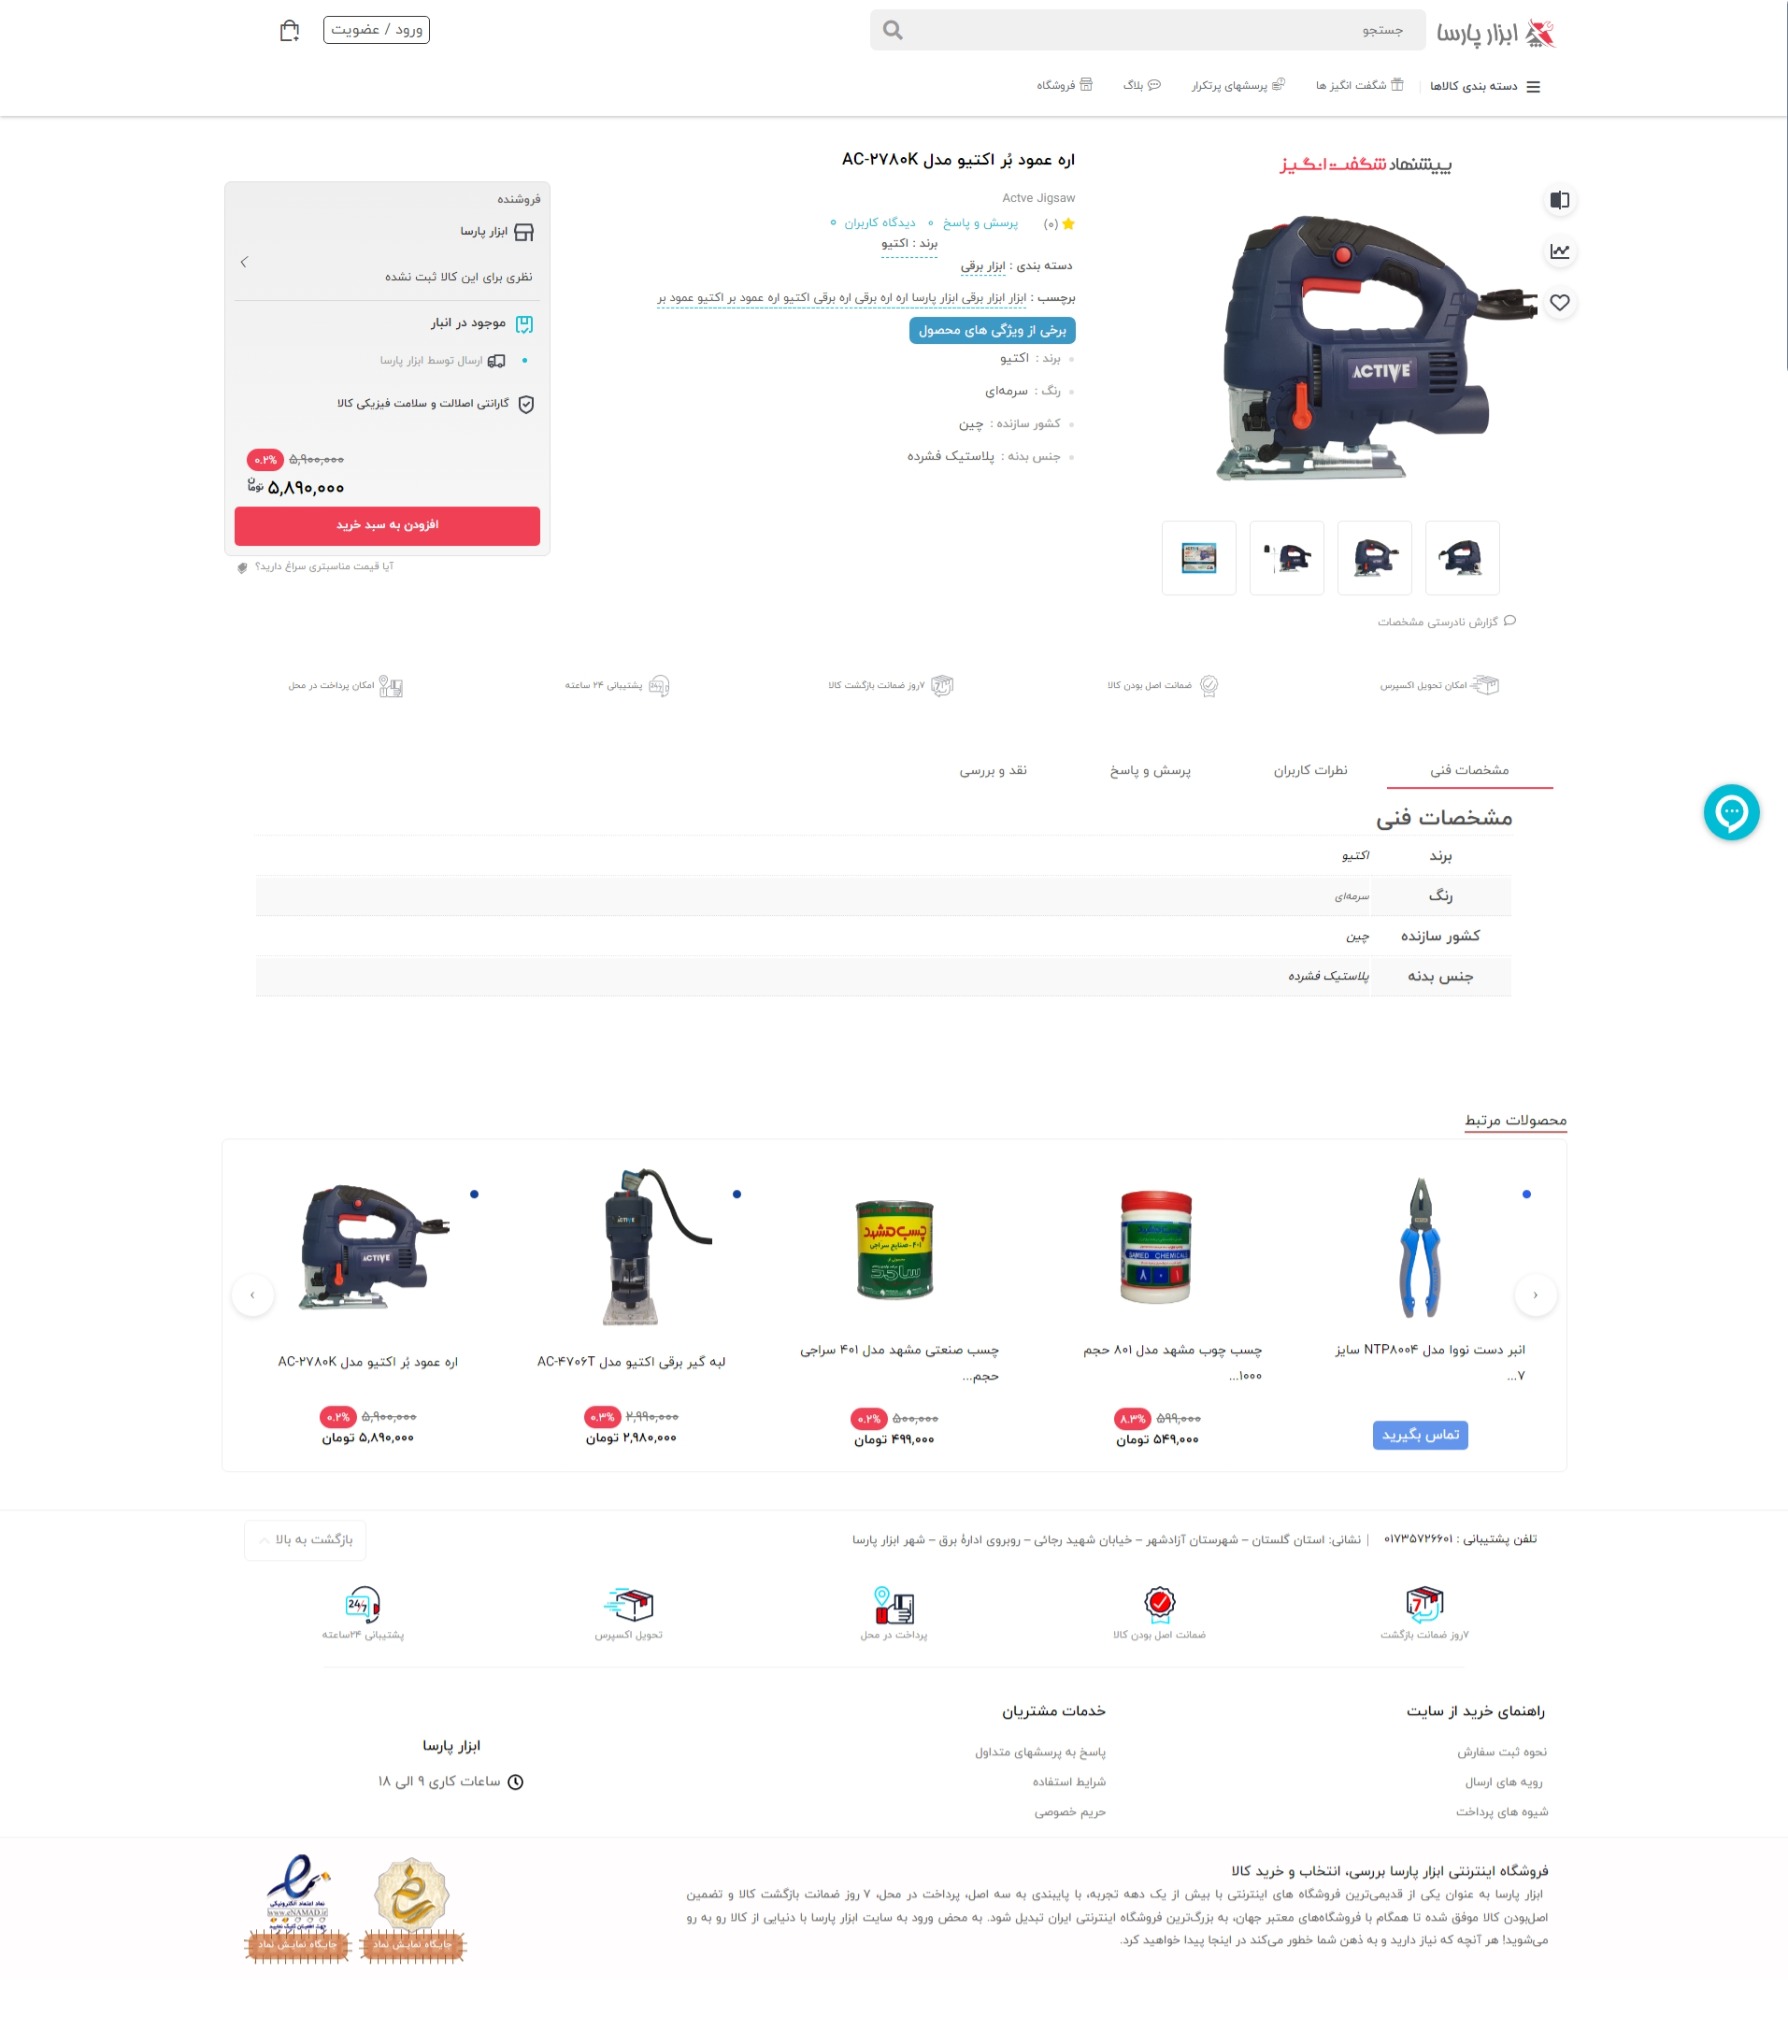 طراحی وب سایت فروشگاهی ابزار پارسا | طراحی وب سایت, نمونه کار